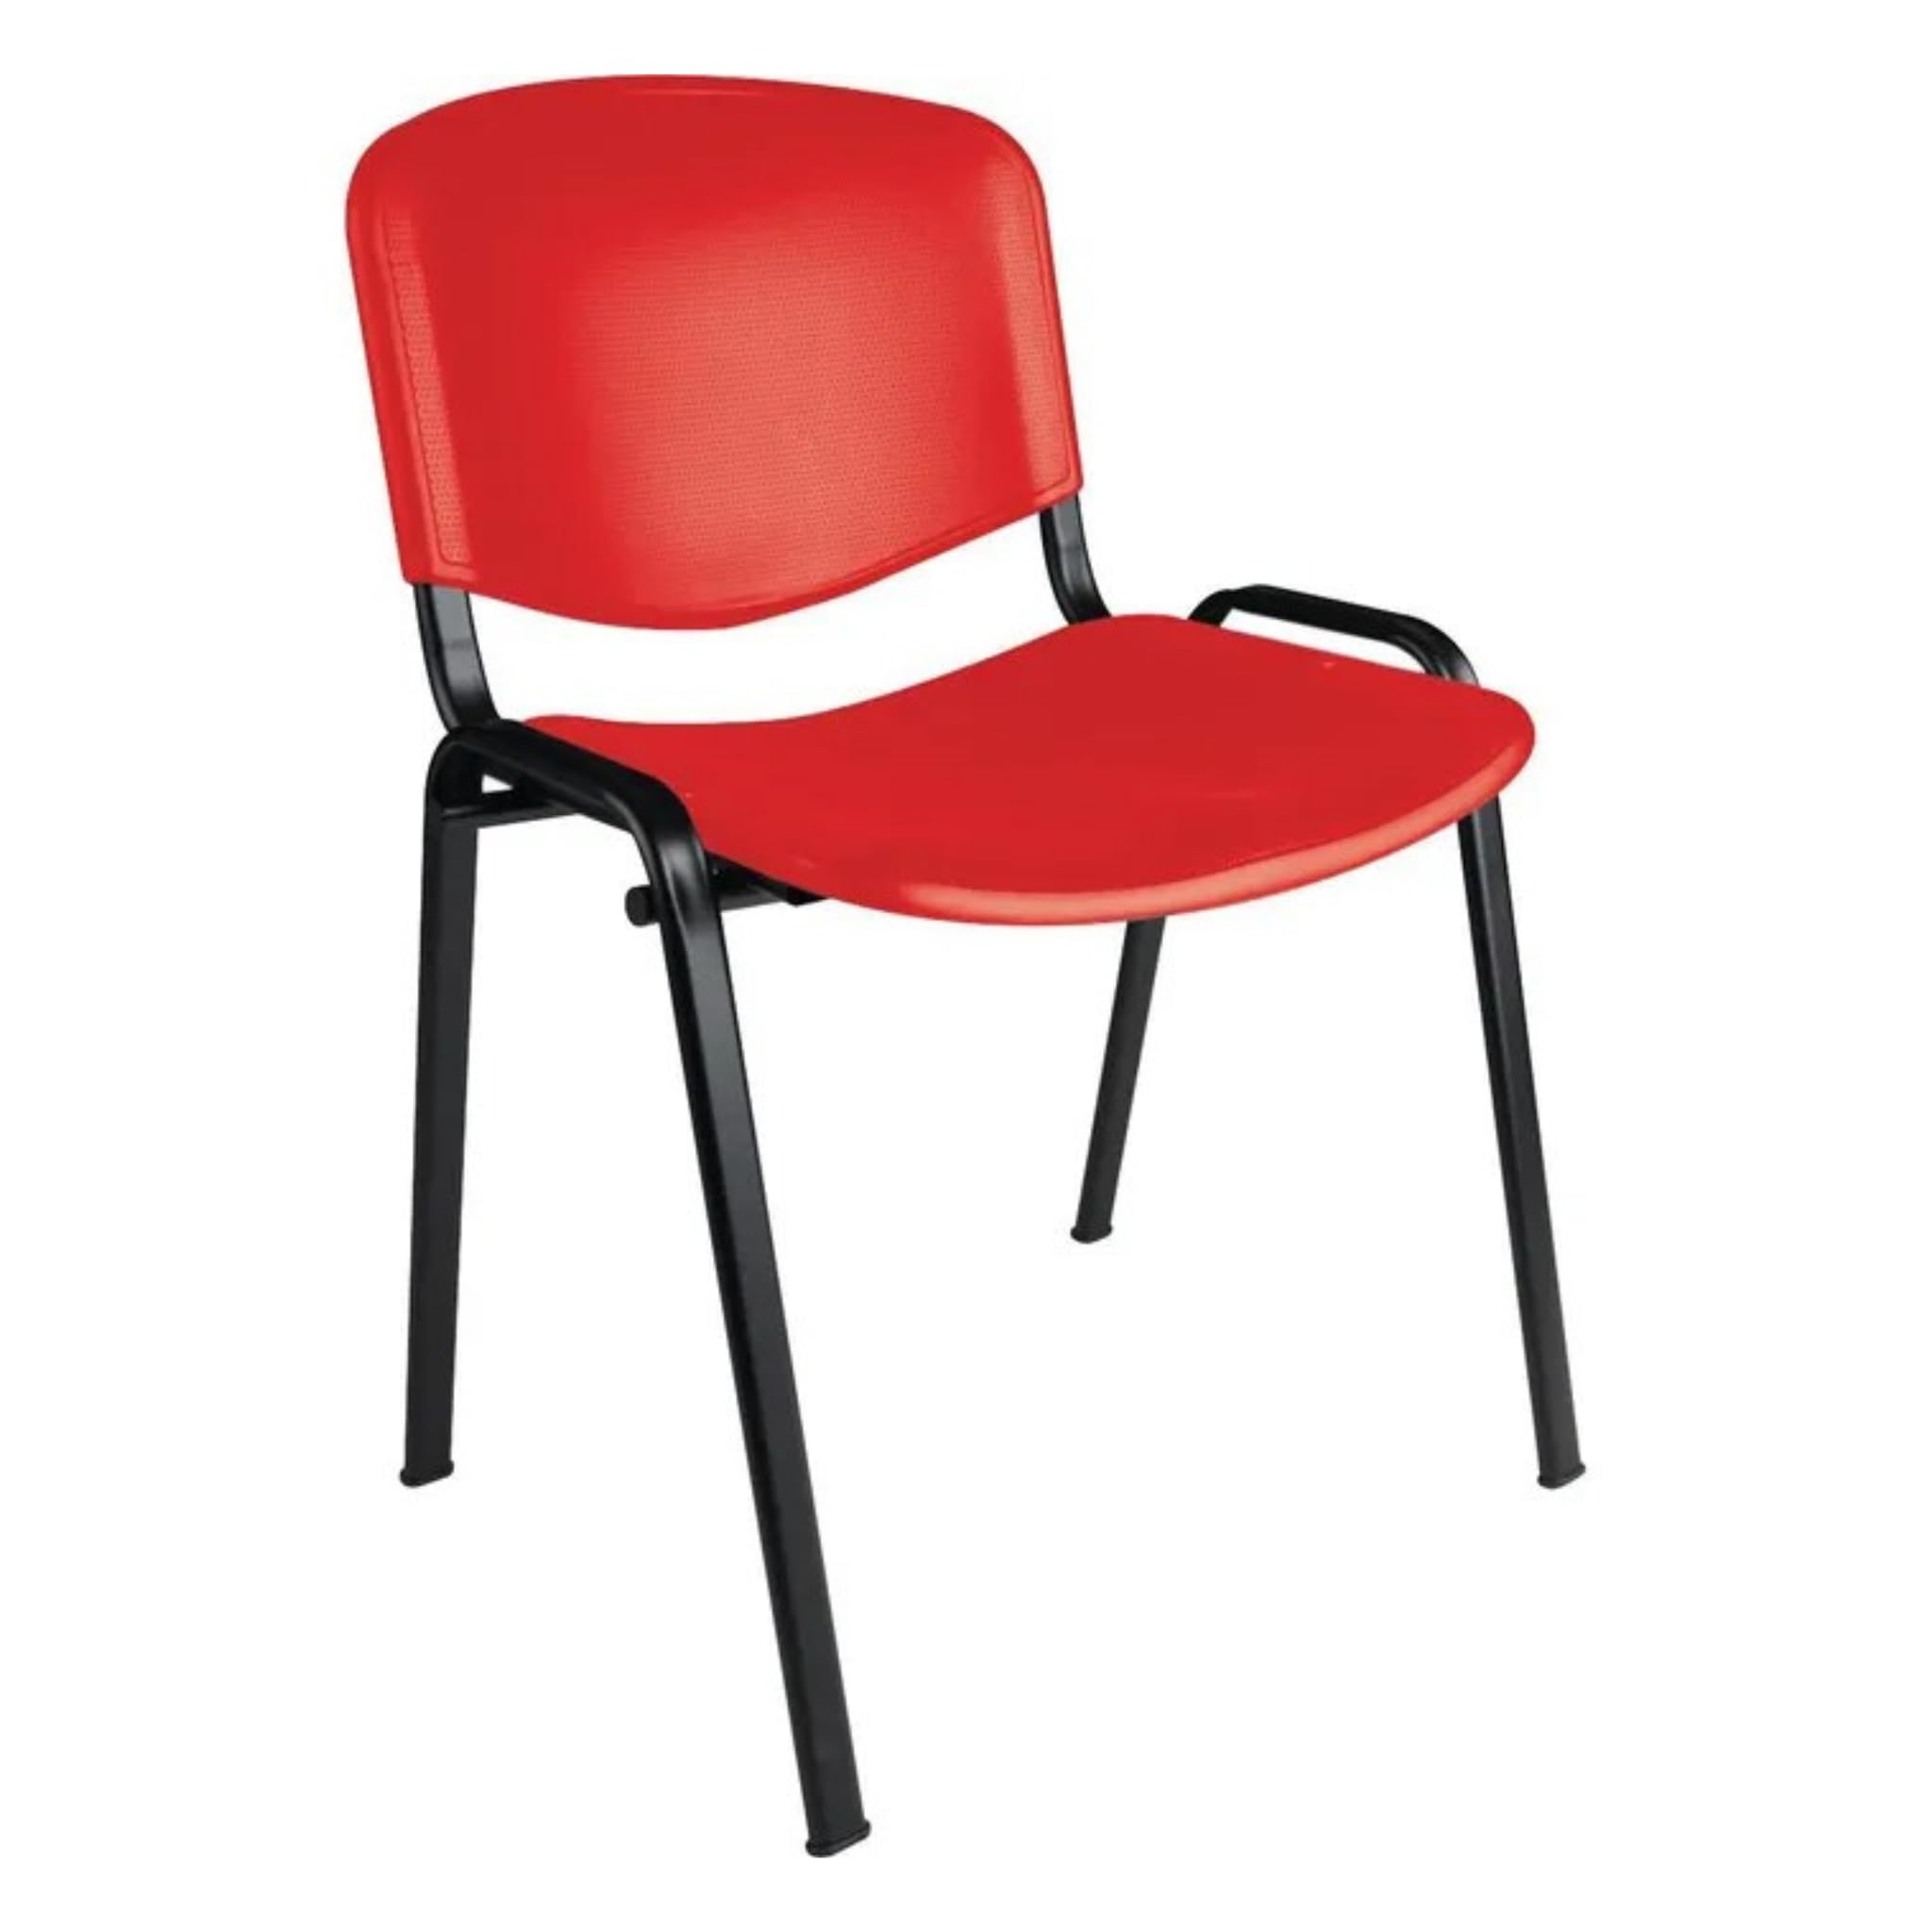 Büro & More Besucherstühle, stapelbarer Konferenzstuhl, mit Sitz und Rückenlehne aus Kunststoff. (Rot)